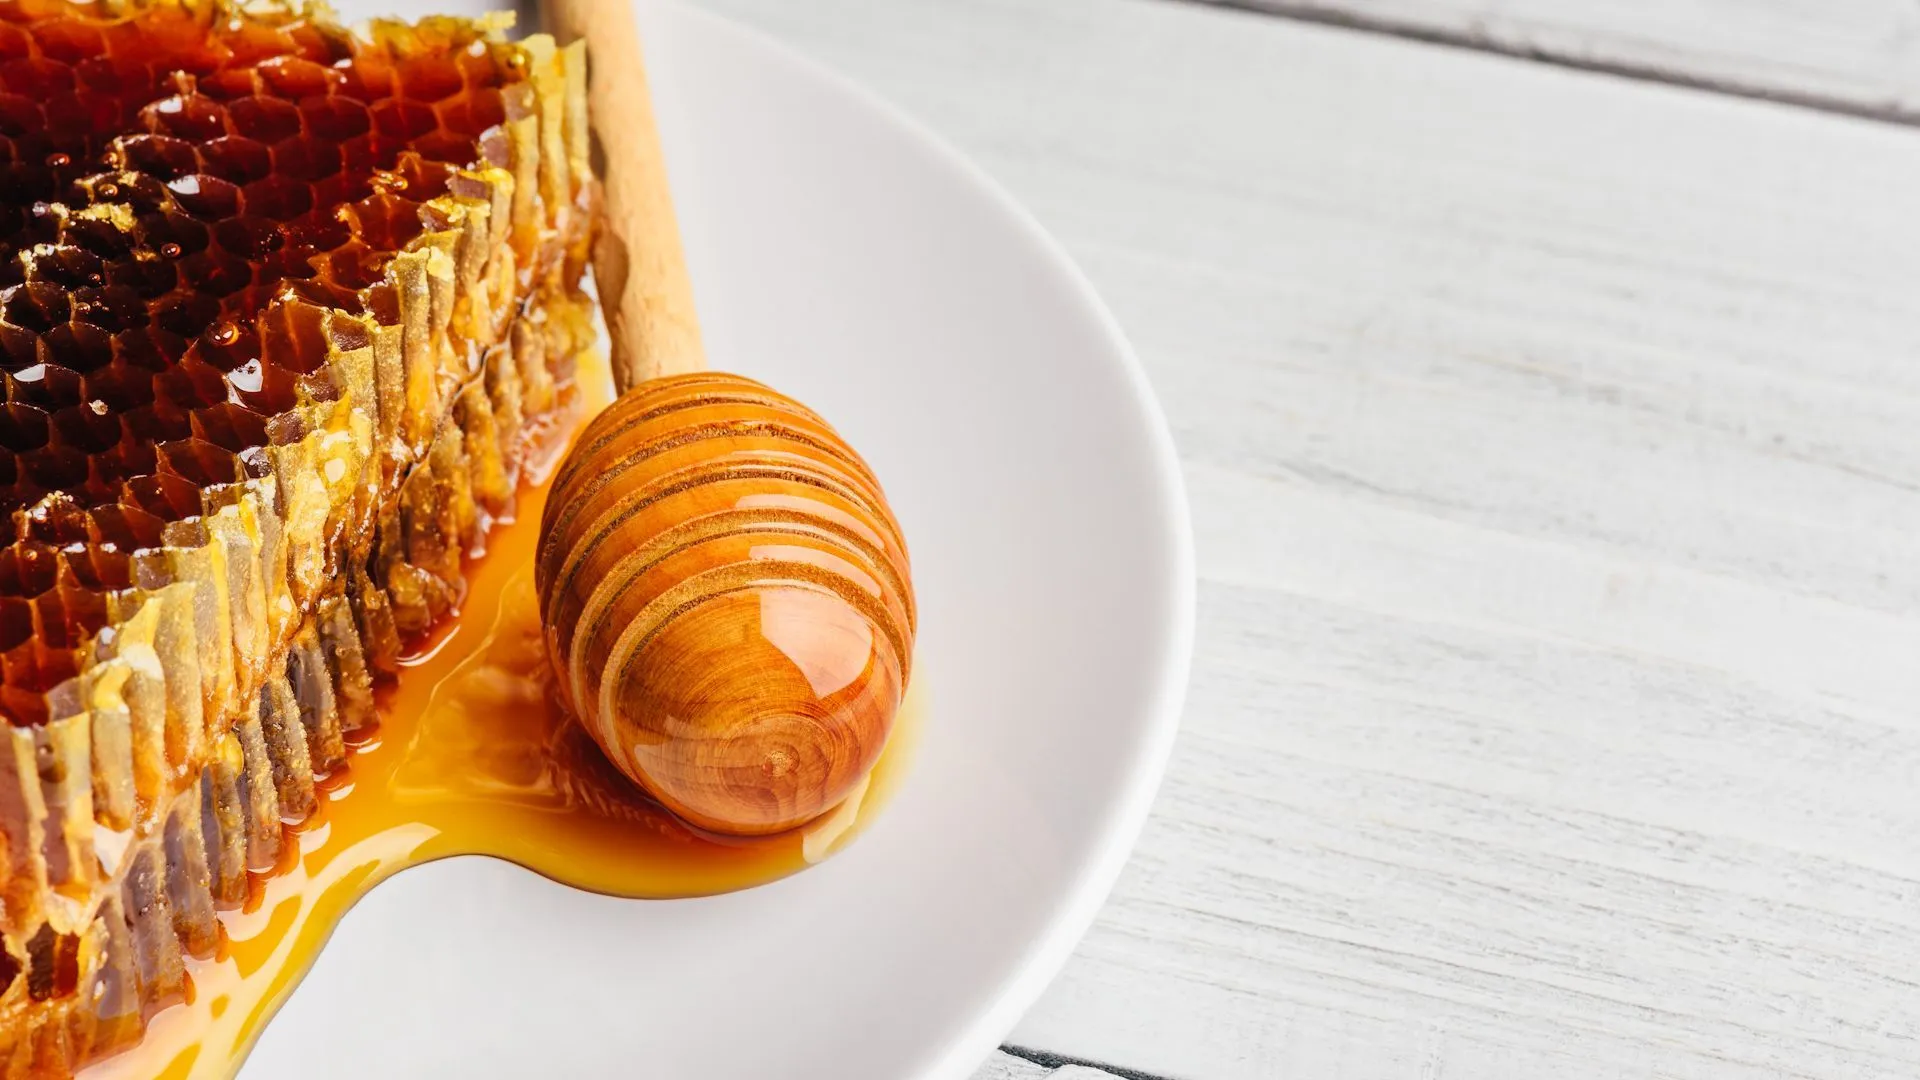 Le mythe de la nutrition démoli : Voici pourquoi le miel n'est pas vraiment bon pour la santé